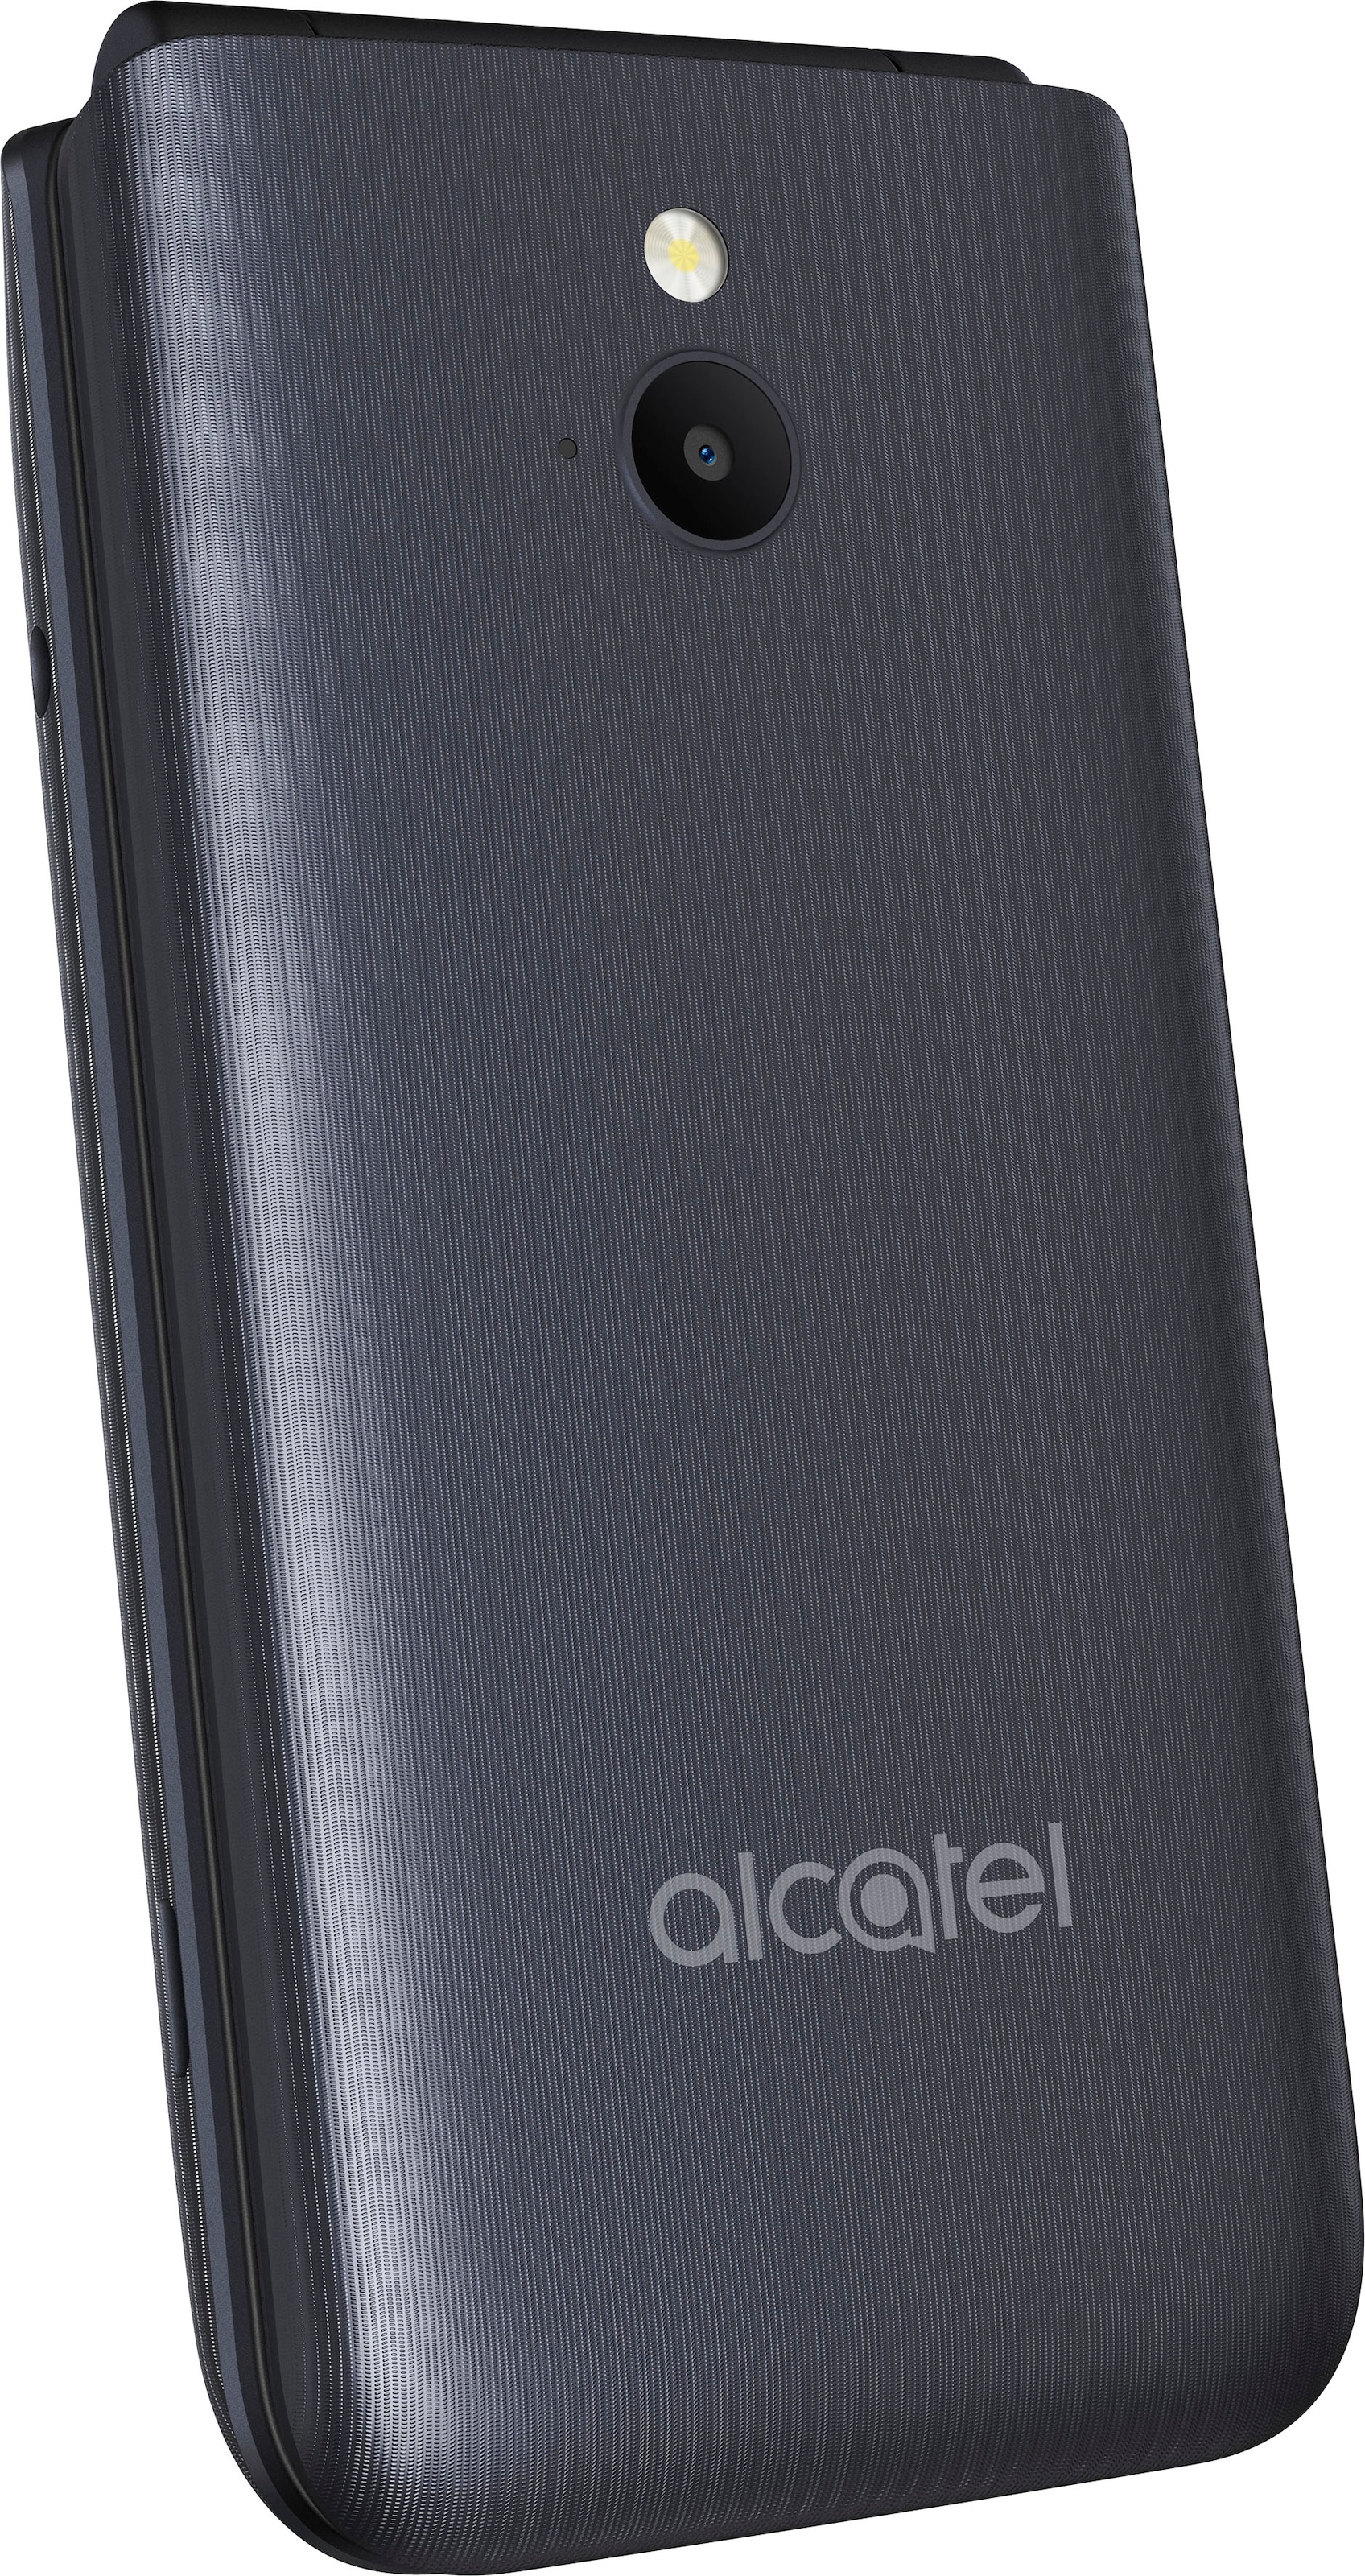 Alcatel Handy »3082«, Dark Gray, 6,1 cm/2,4 Zoll, 0,13 GB Speicherplatz, 1,3  MP Kamera jetzt im OTTO Online Shop | Handys